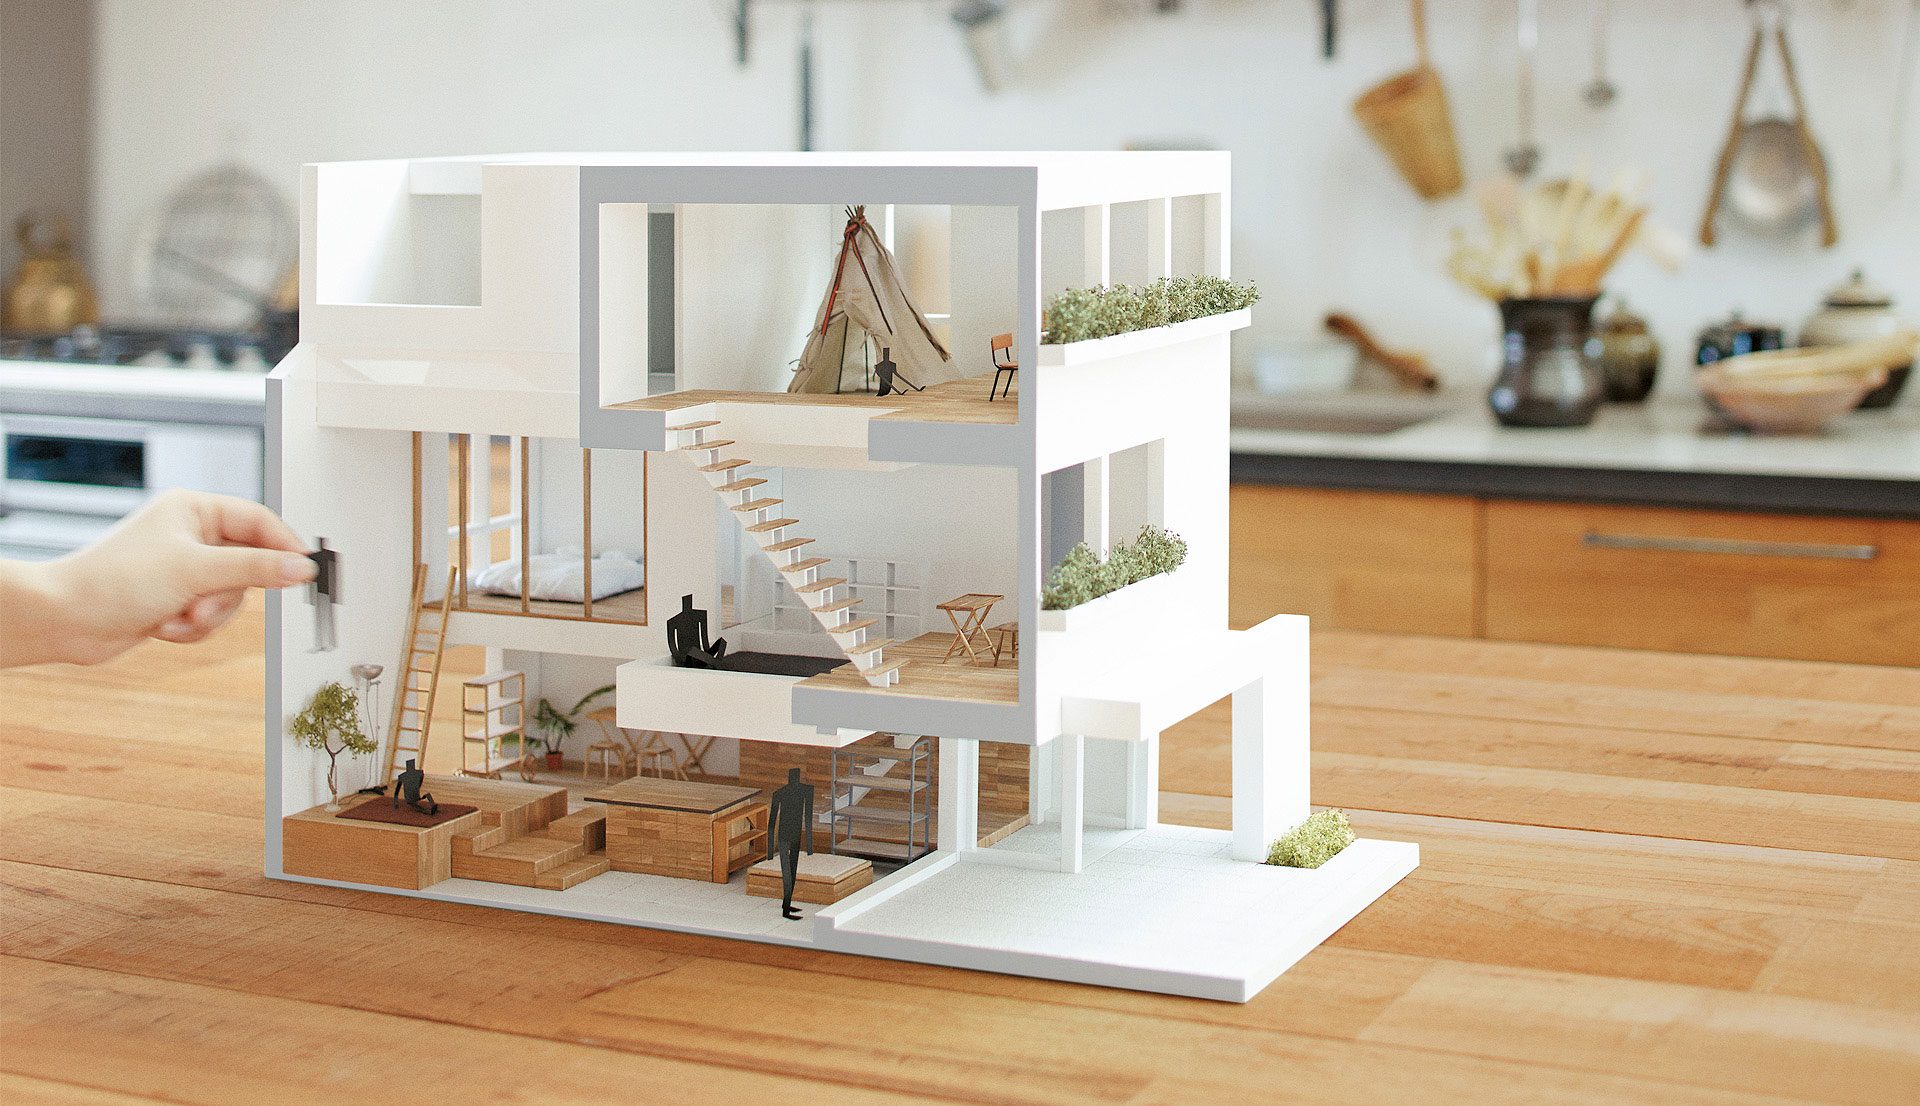 ヘーベルハウスLONGLIFE IS BEAUTIFUL 3階建て住宅の空間づくり